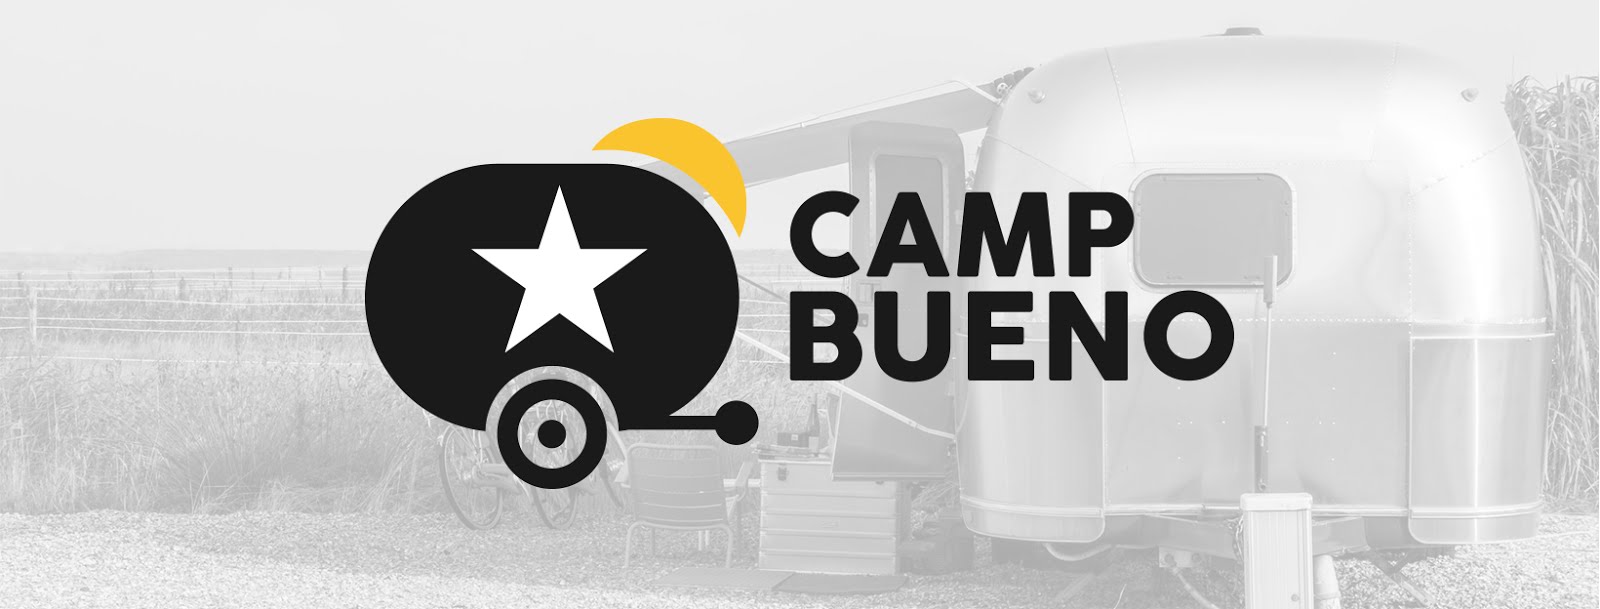 Camp Bueno